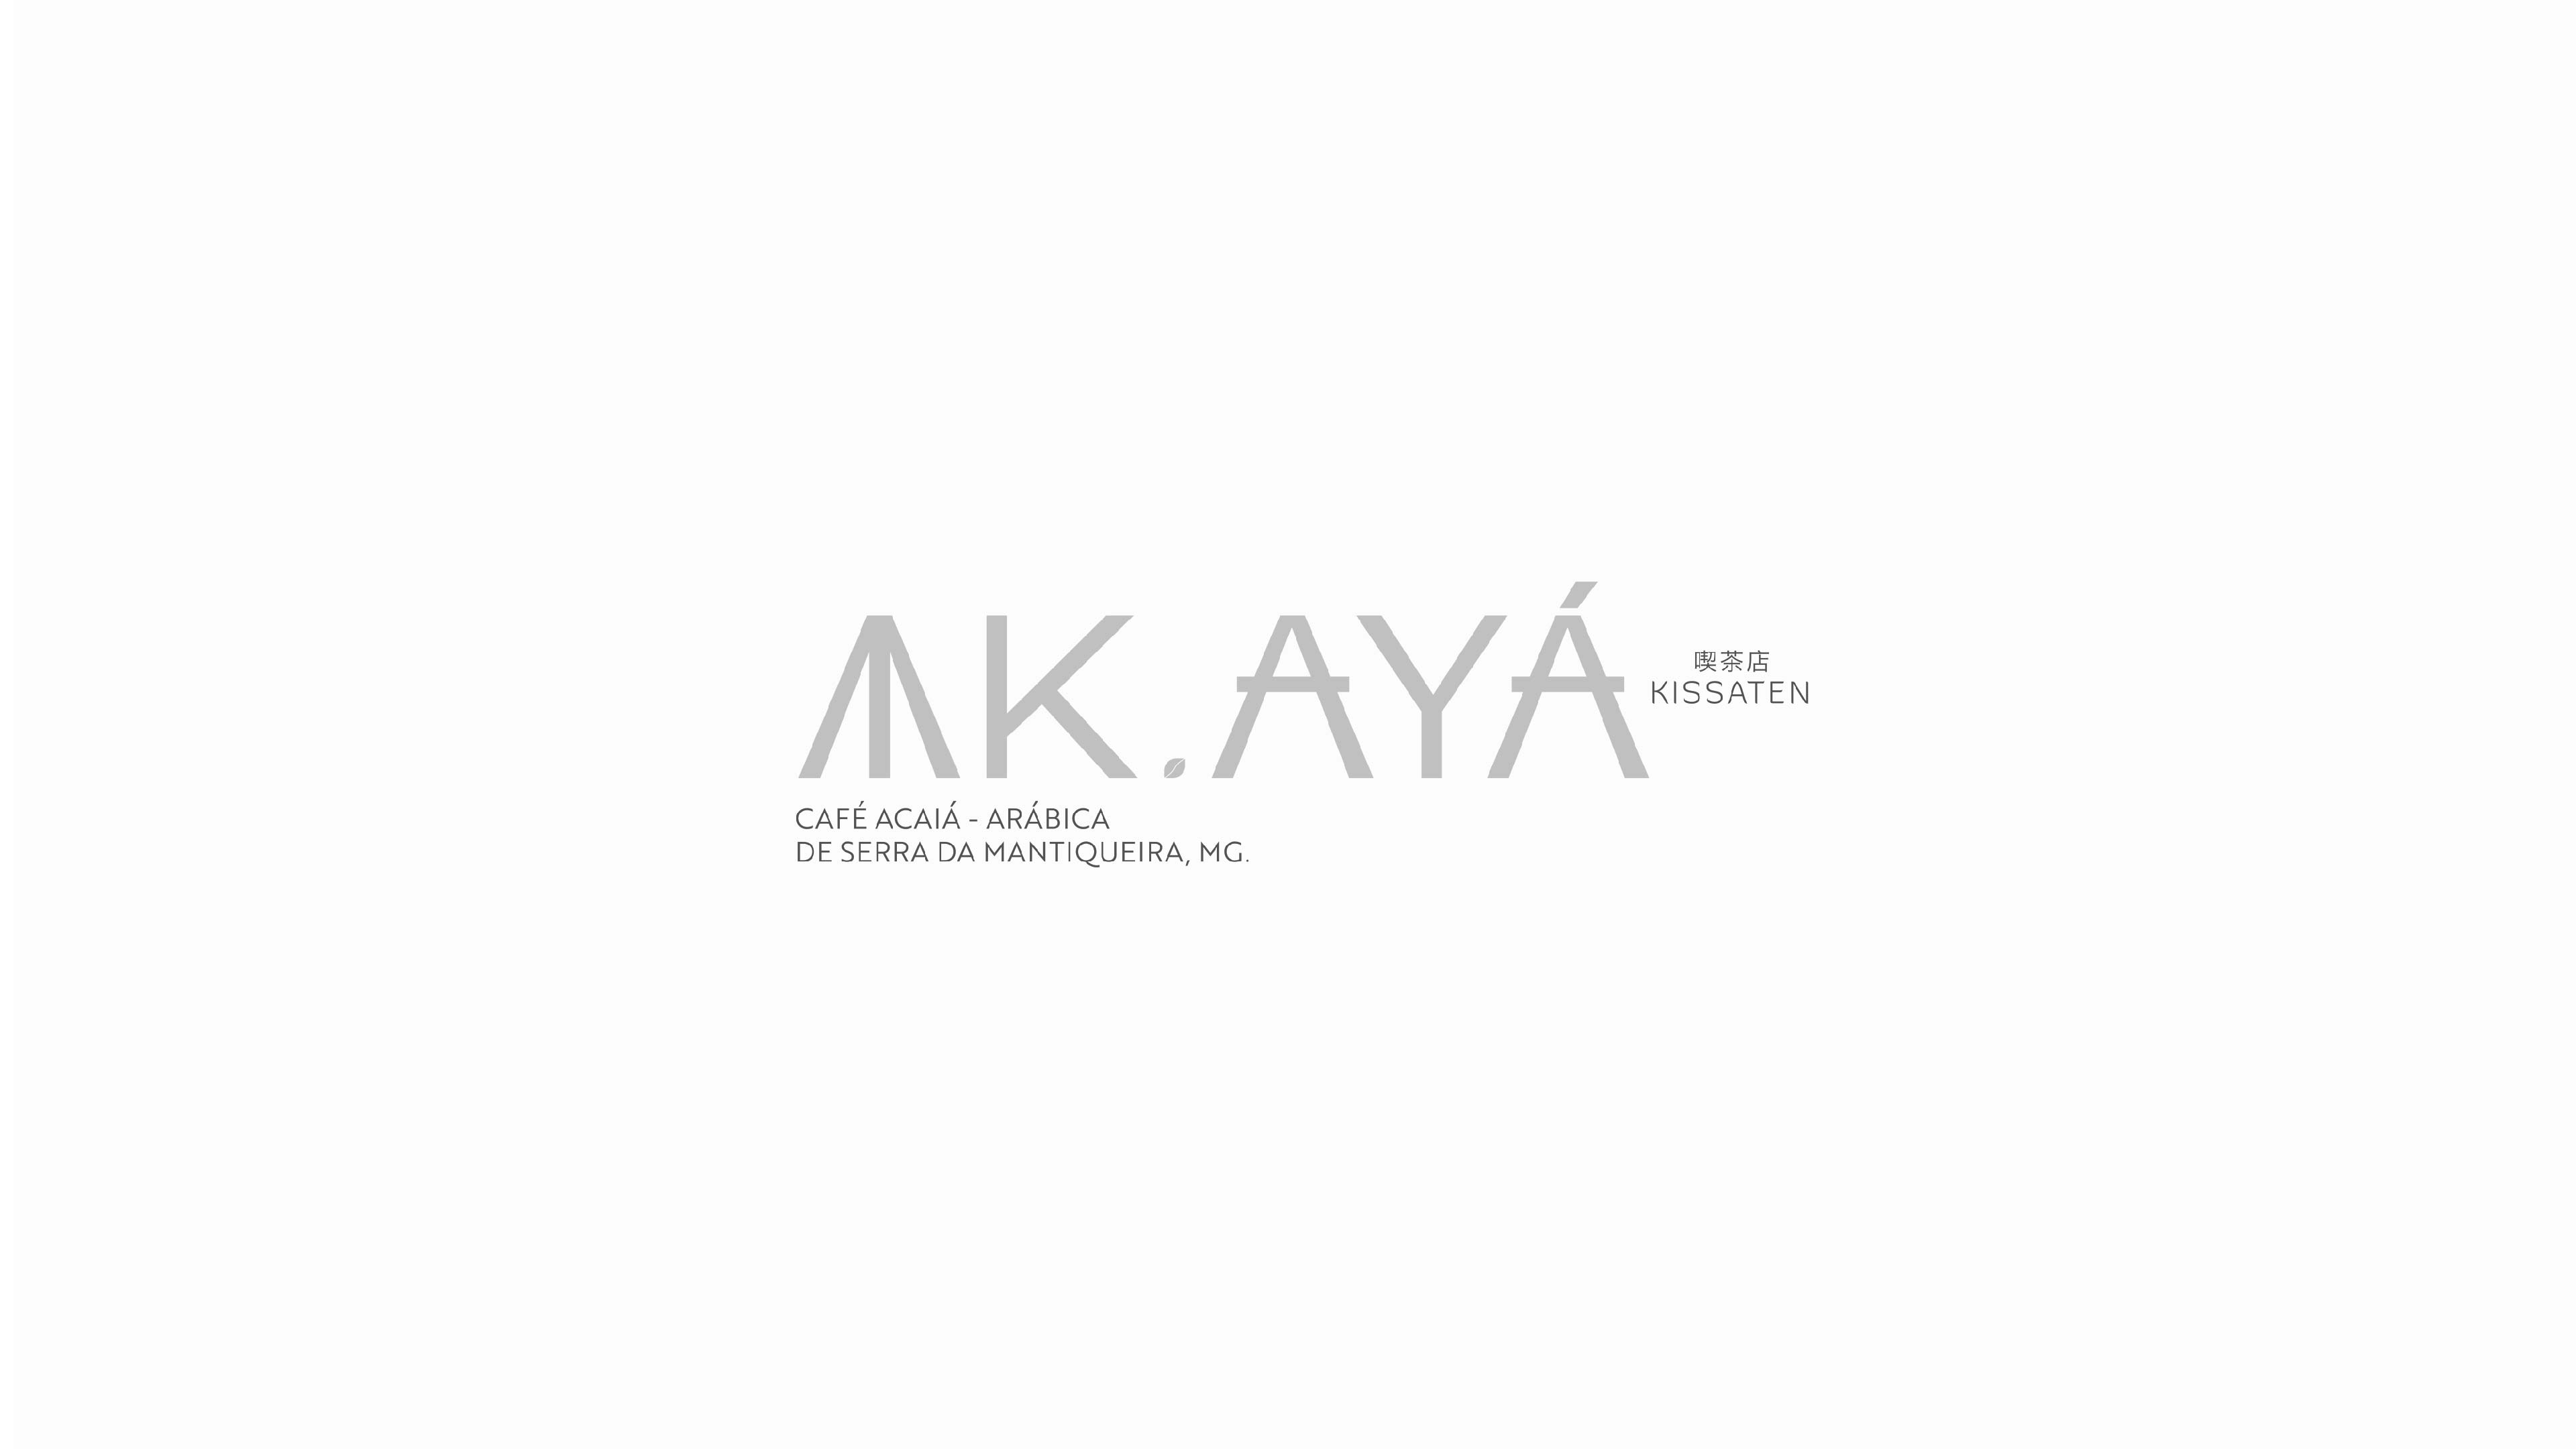 AK.AY'A Kissaten咖啡店品牌设计